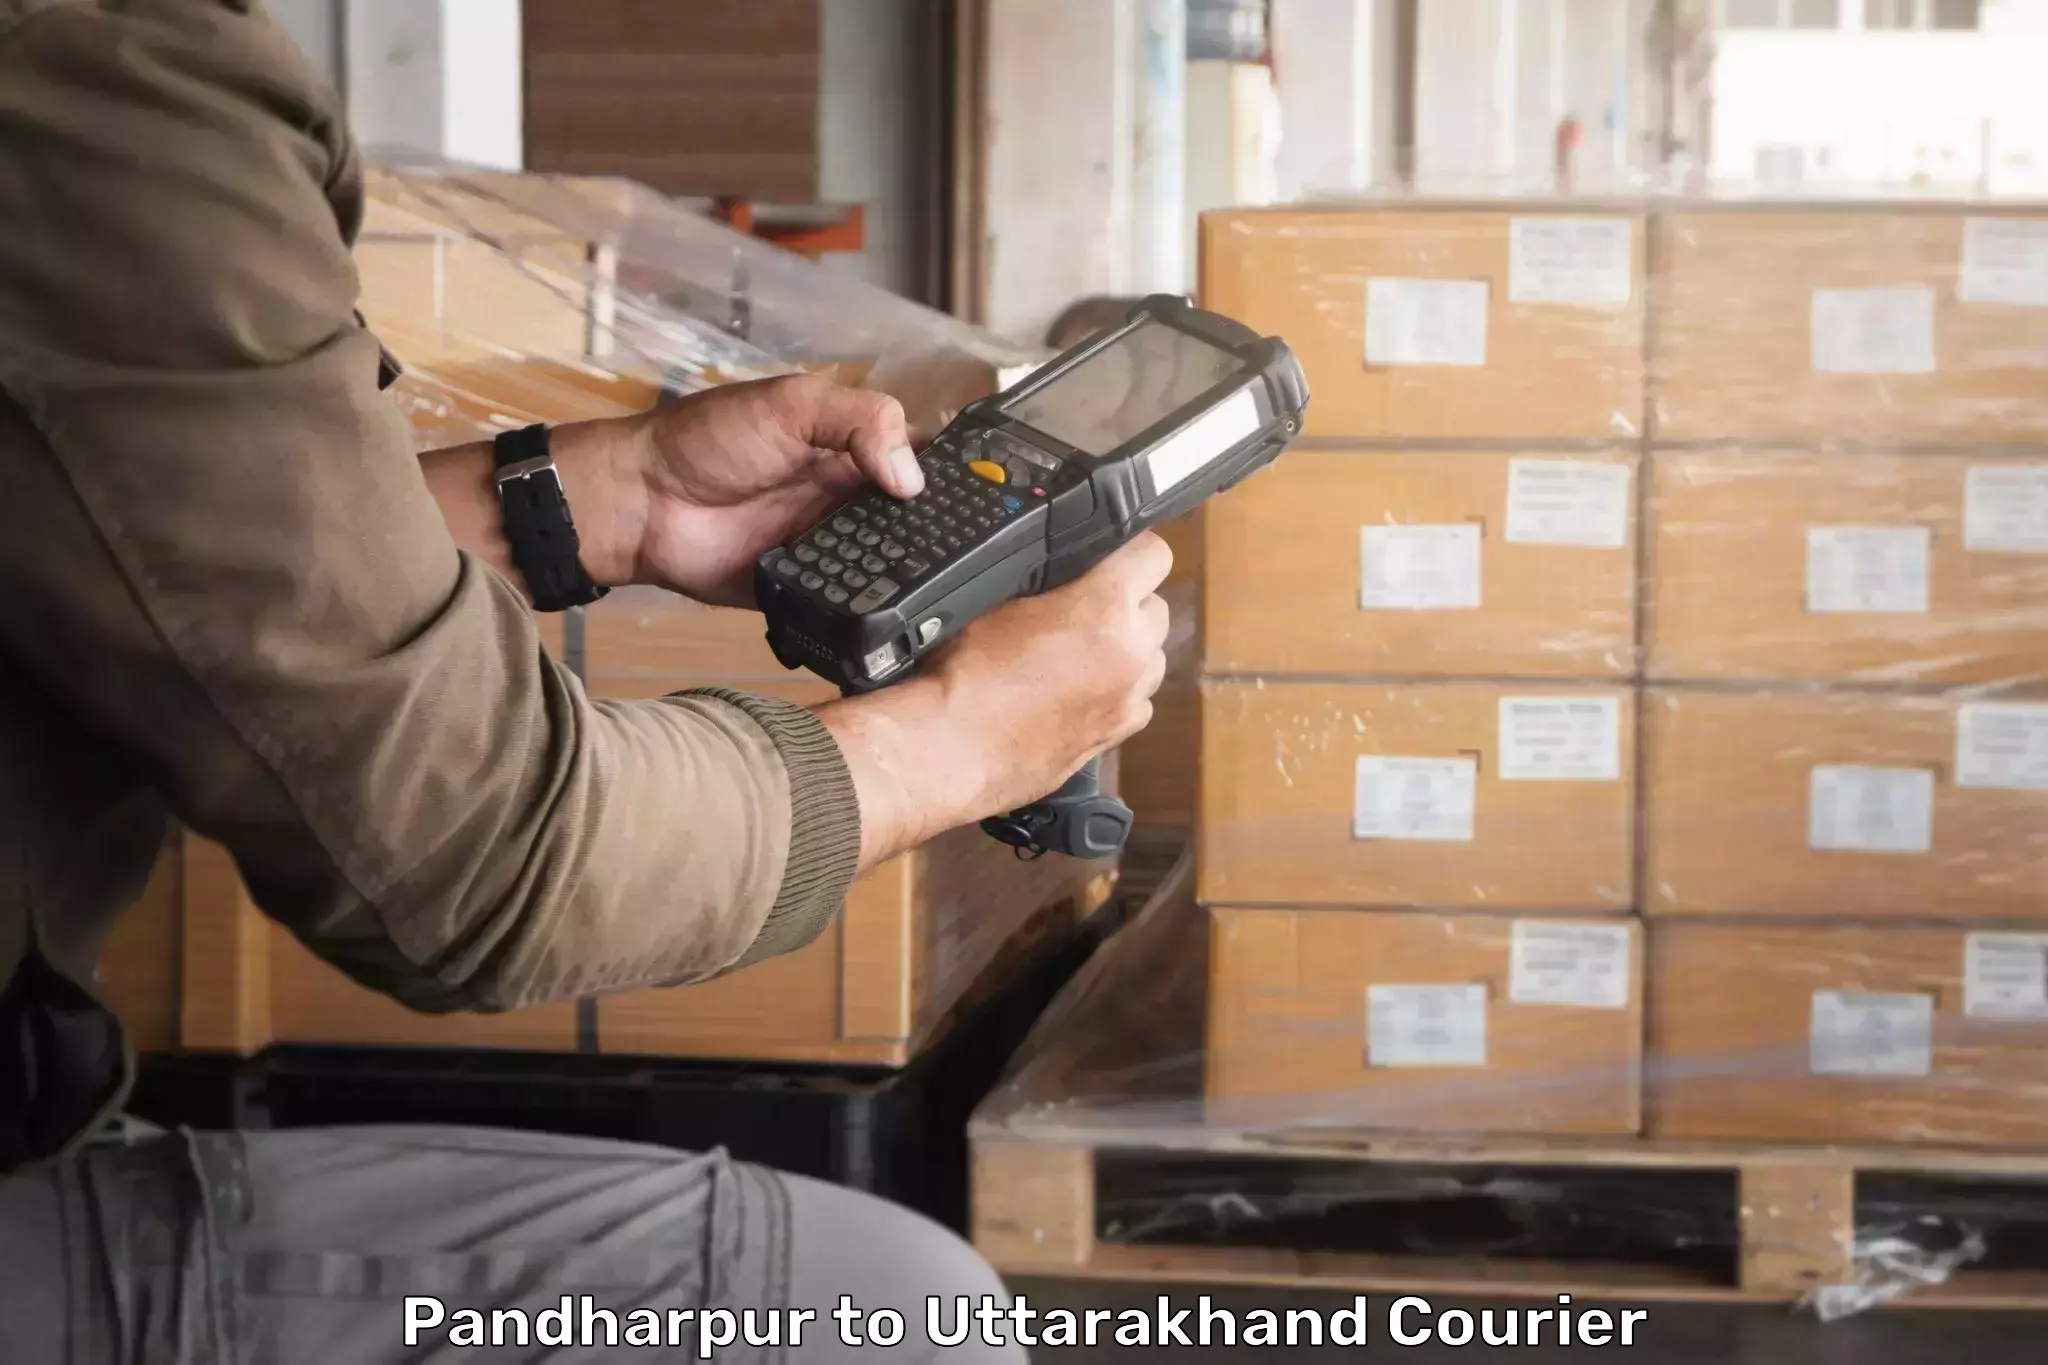 Express courier facilities Pandharpur to Doiwala